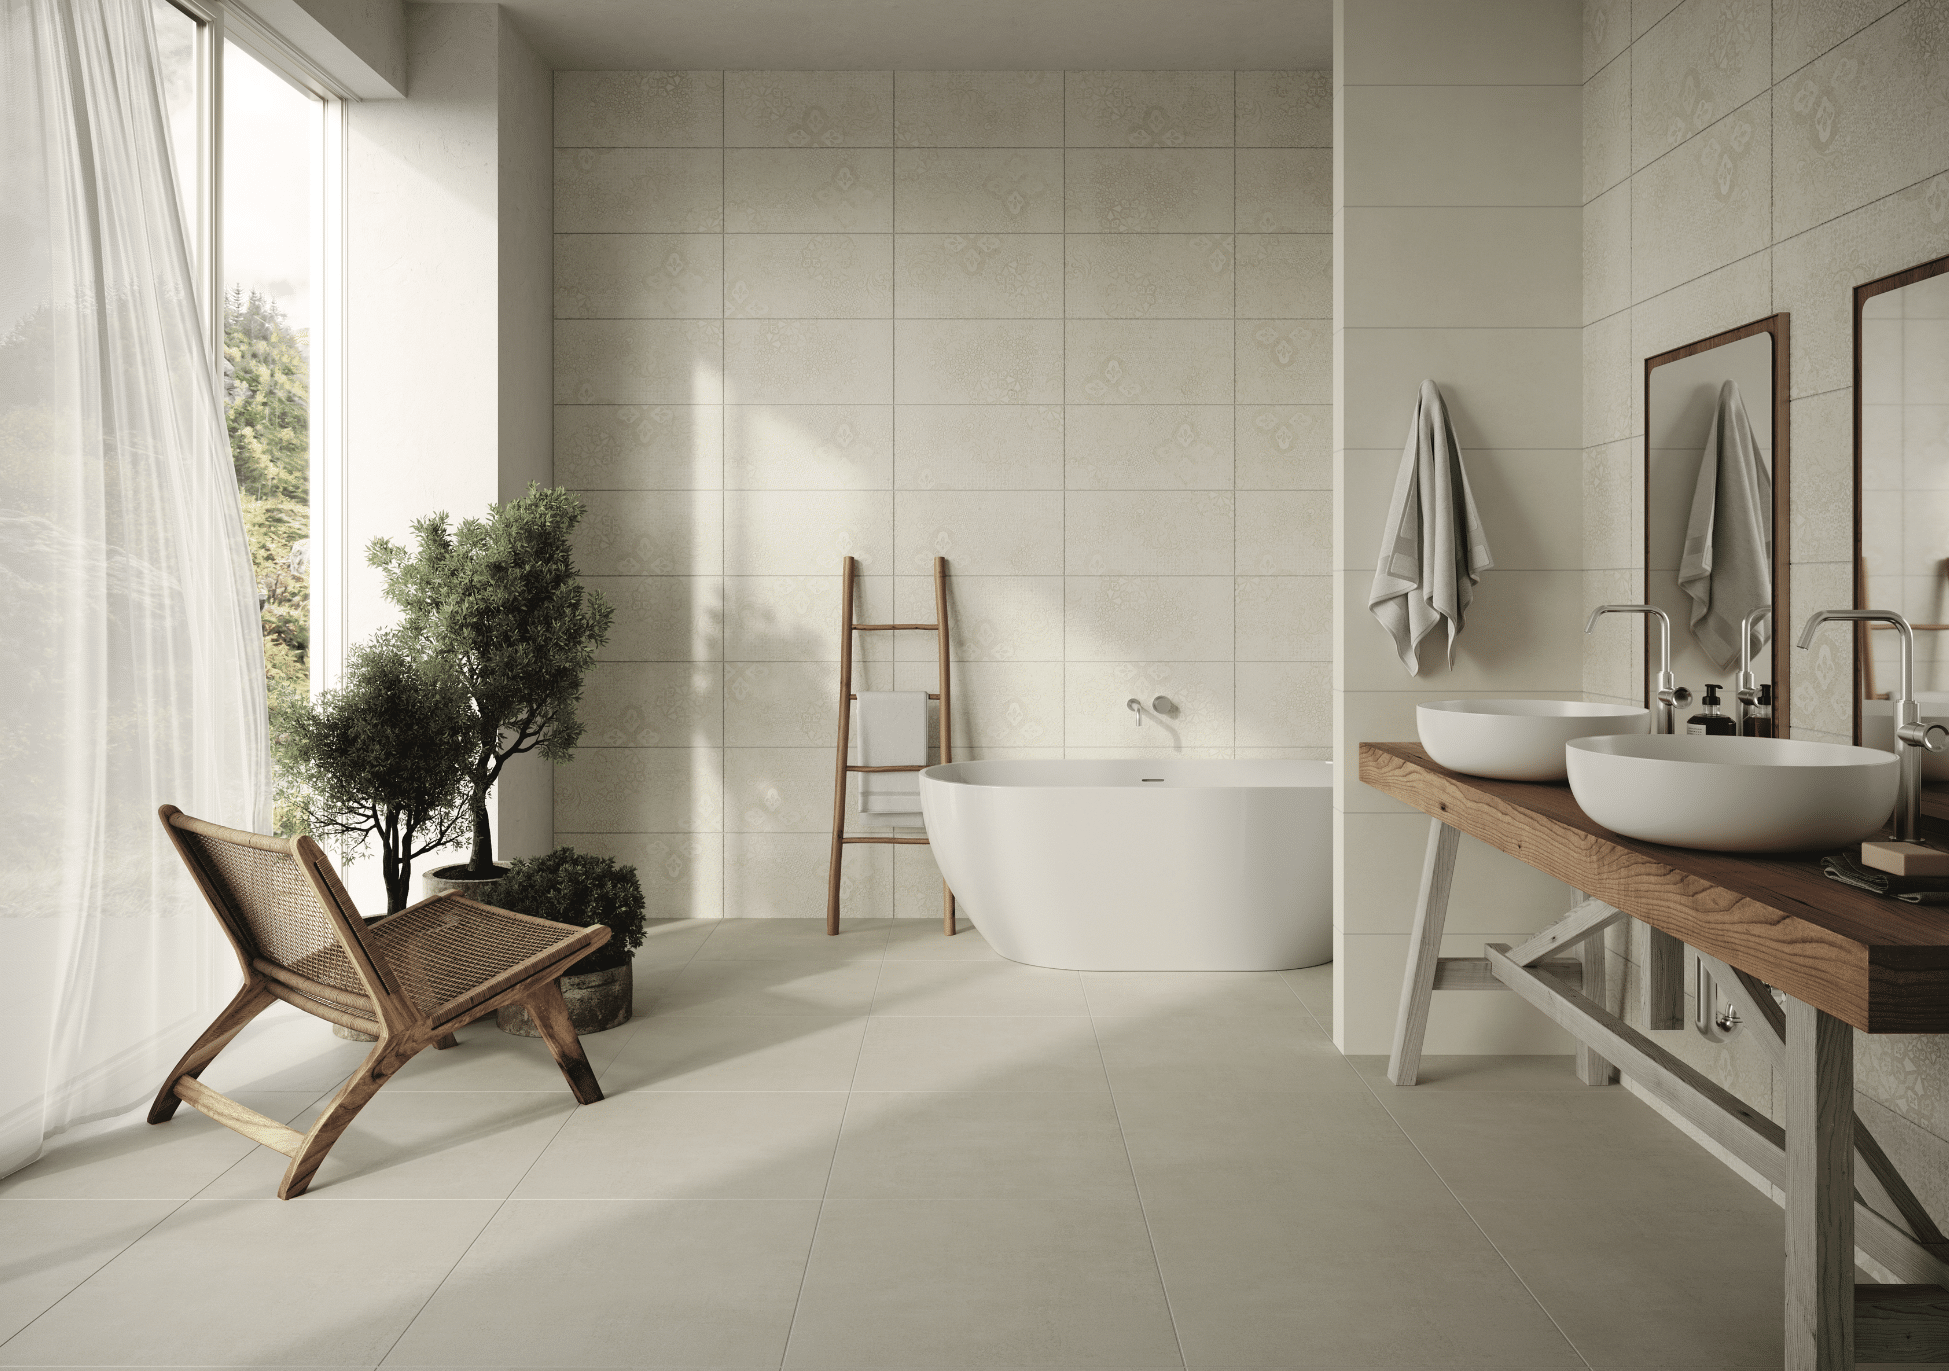 C. Bergmann zeigt ein helles Badezimmer mit Fliesen in Naturtönen an der Wand und Boden mit einem Doppelwaschtisch aus Holz und einer freistehenden Badewanne von ABK.